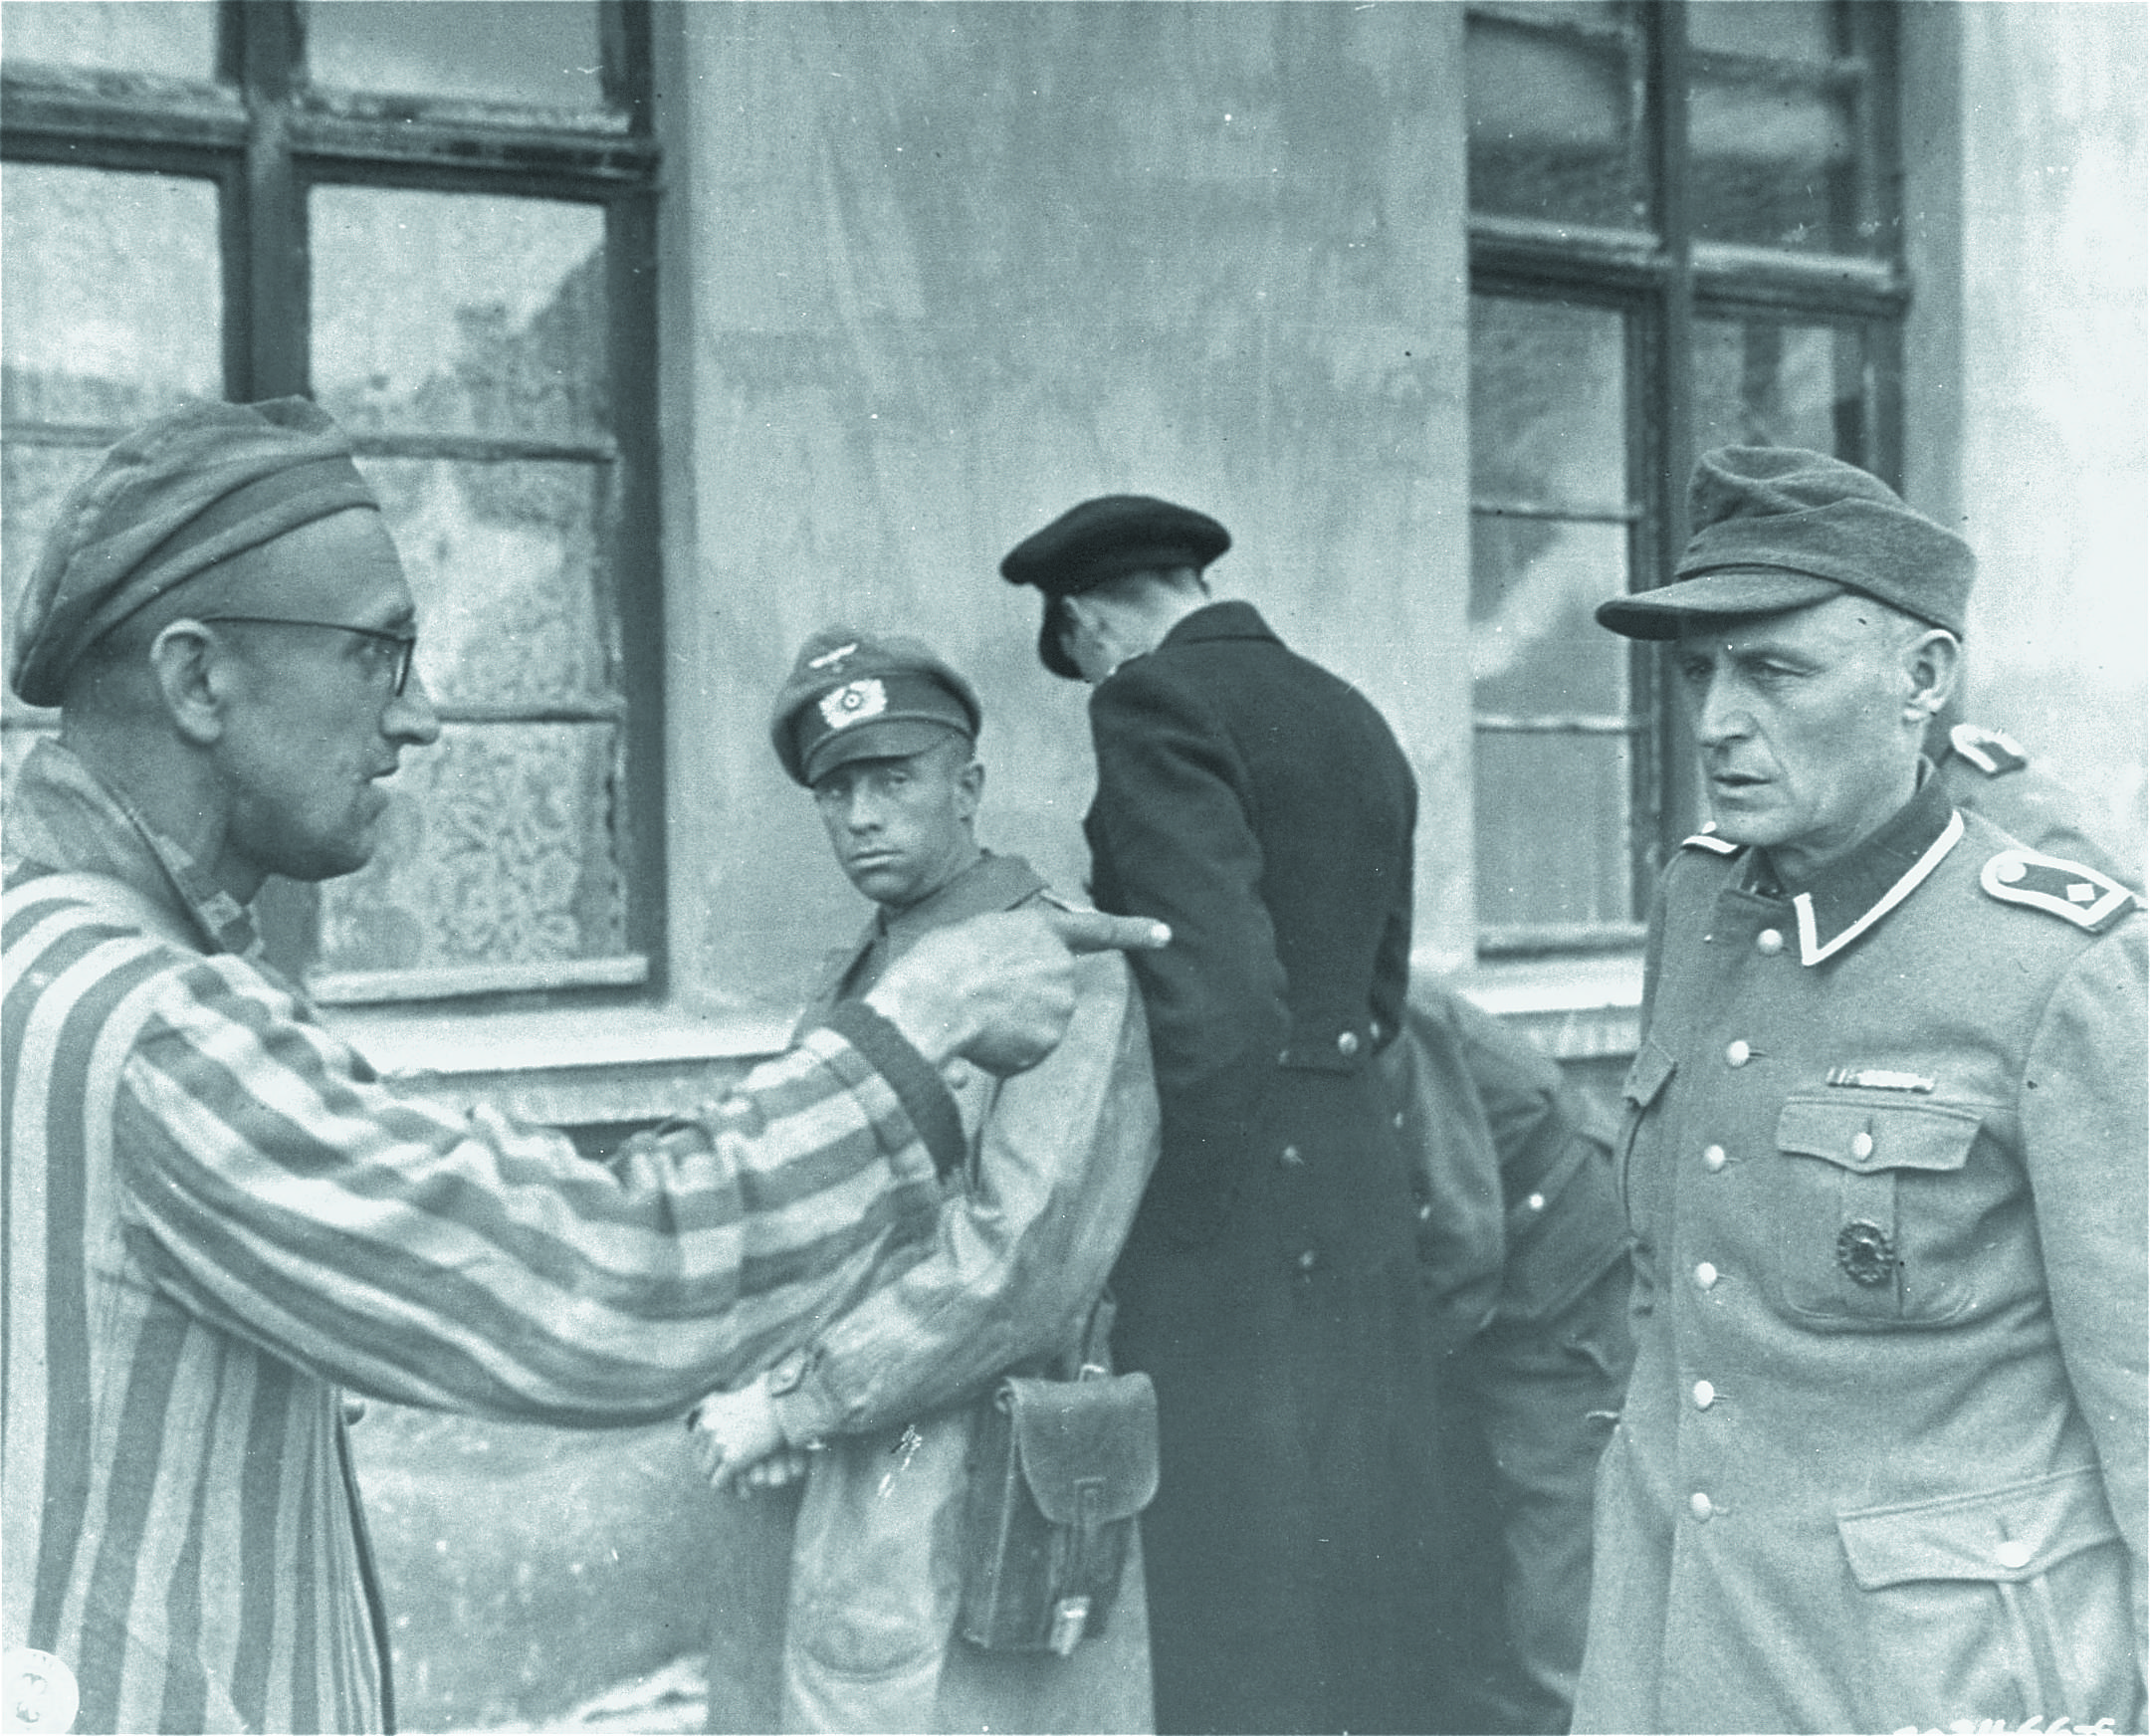 Buchenwald, 14 aprile 1945: un sopravvissuto russo liberato dalle truppe americane identifica una guardia SS particolarmente violenta